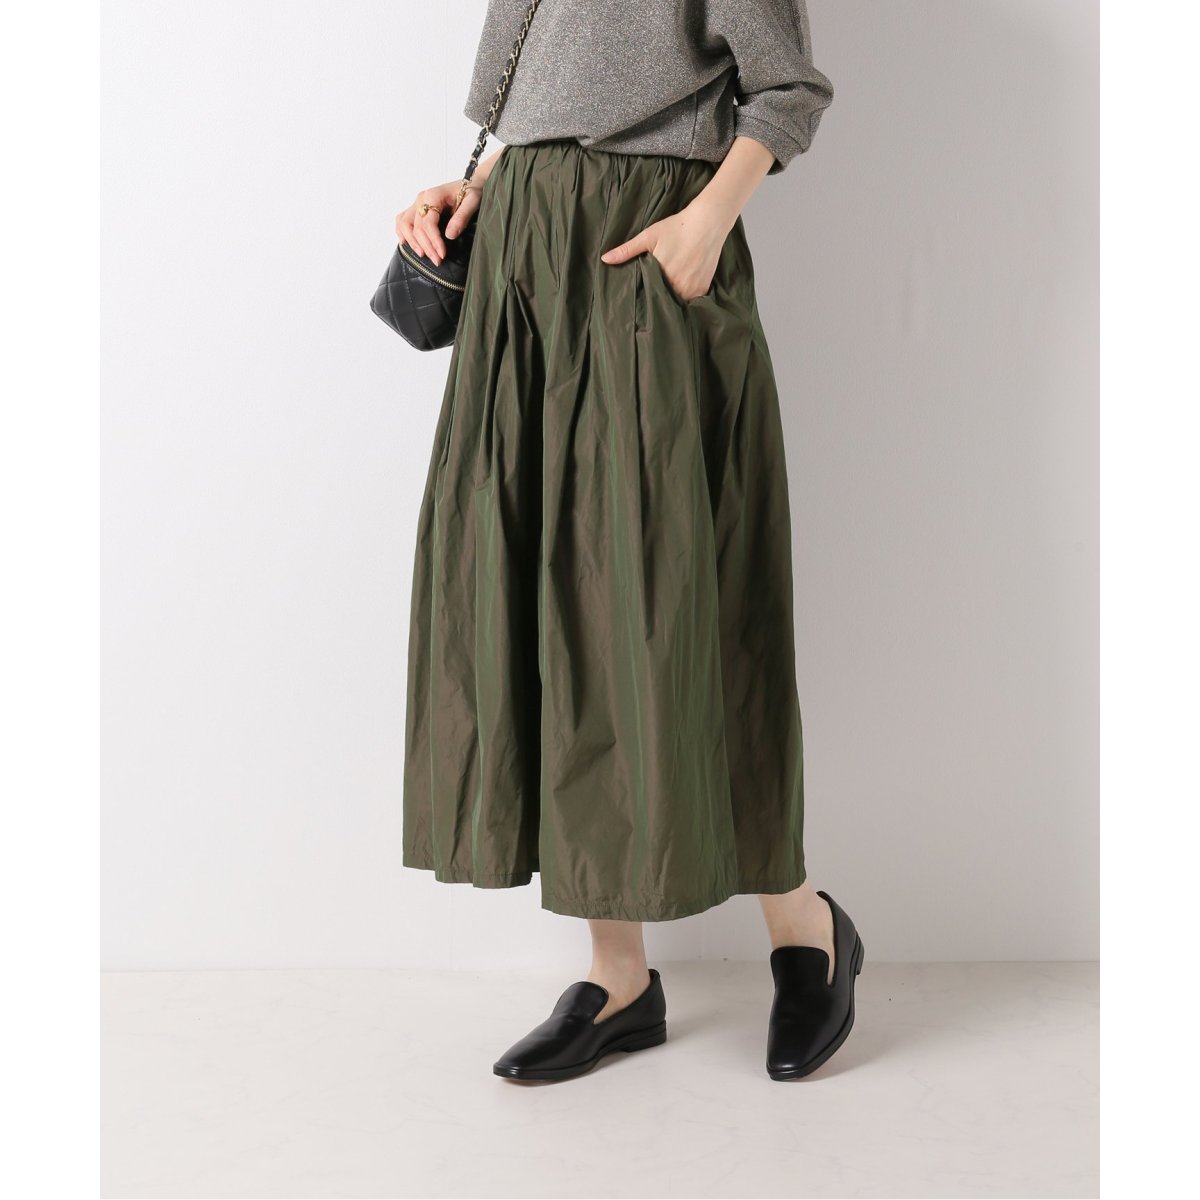 イエナ (IENA)、スカートの通販 | ファッション通販 マルイウェブチャネル